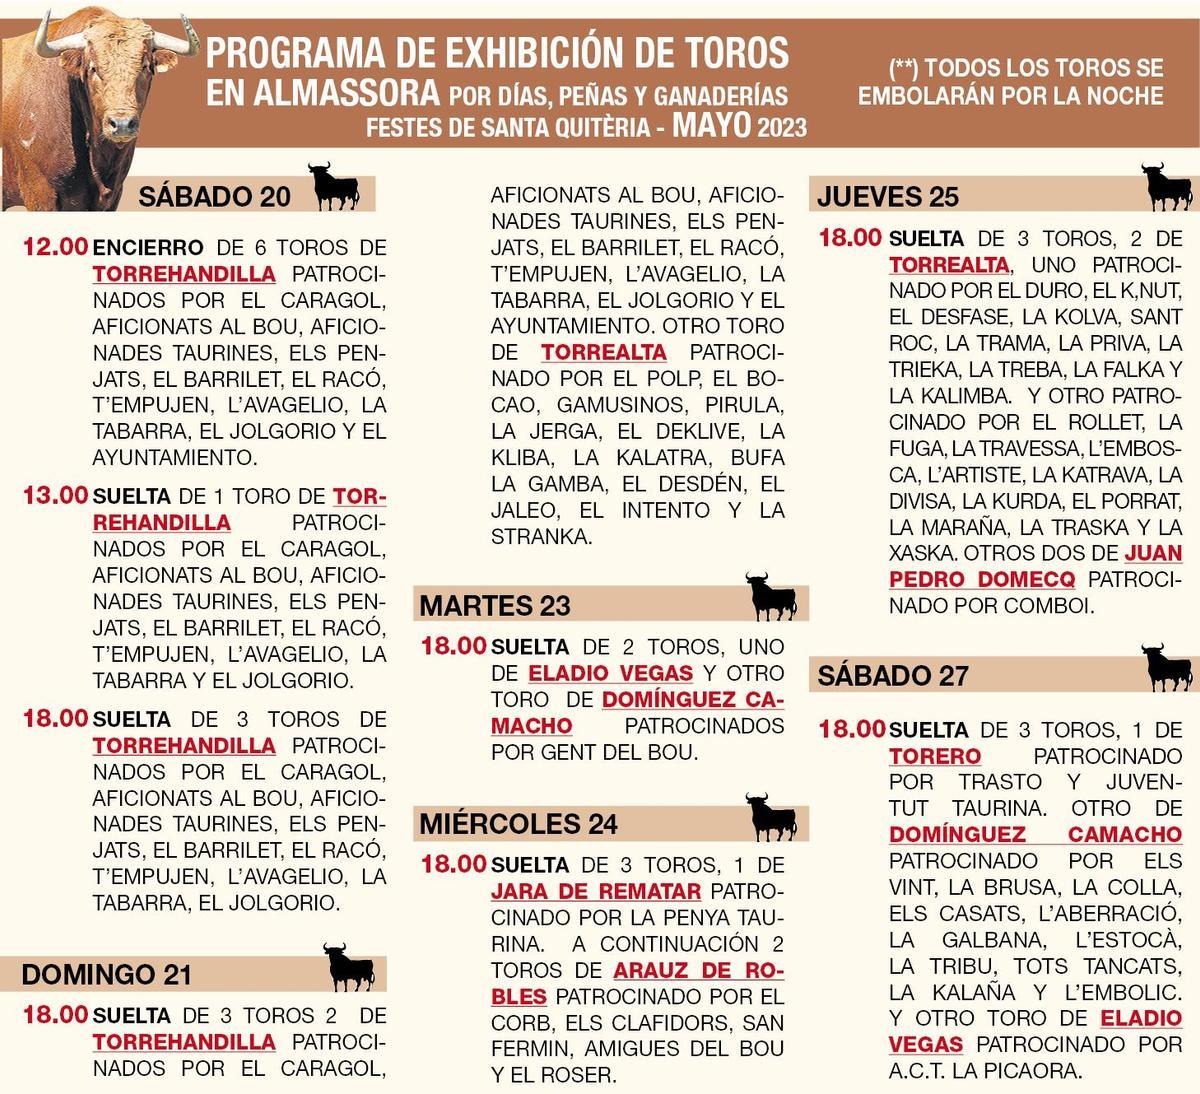 Programa taurino de las fiestas de Santa Quitèria 2023 de Almassora.